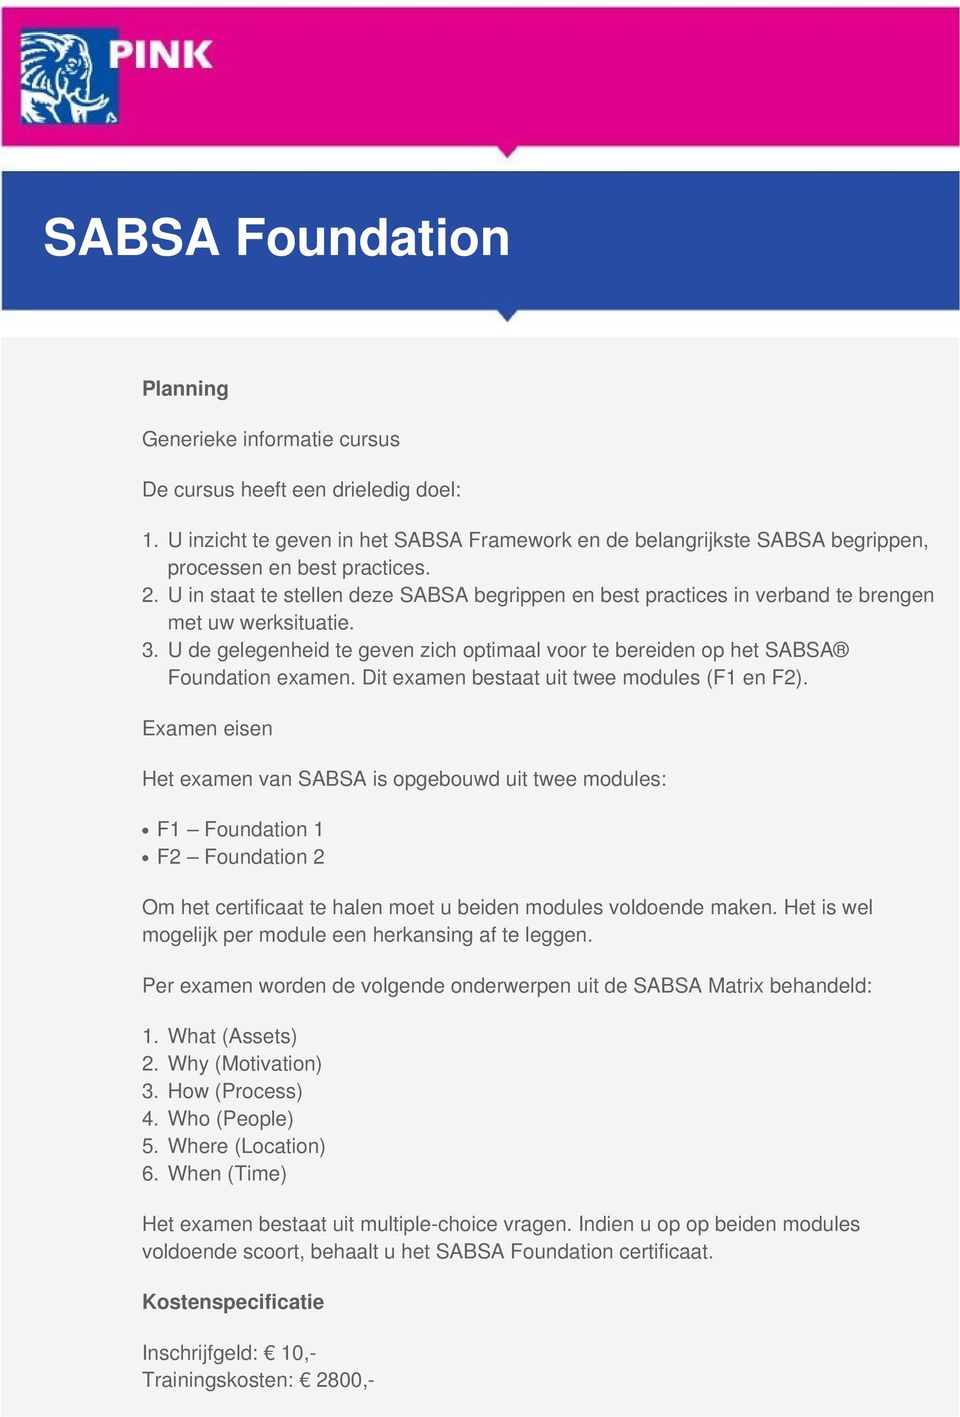 U in staat te stellen deze SABSA begrippen en best practices in verband te brengen met uw werksituatie. U de gelegenheid te geven zich optimaal voor te bereiden op het SABSA Foundation examen.